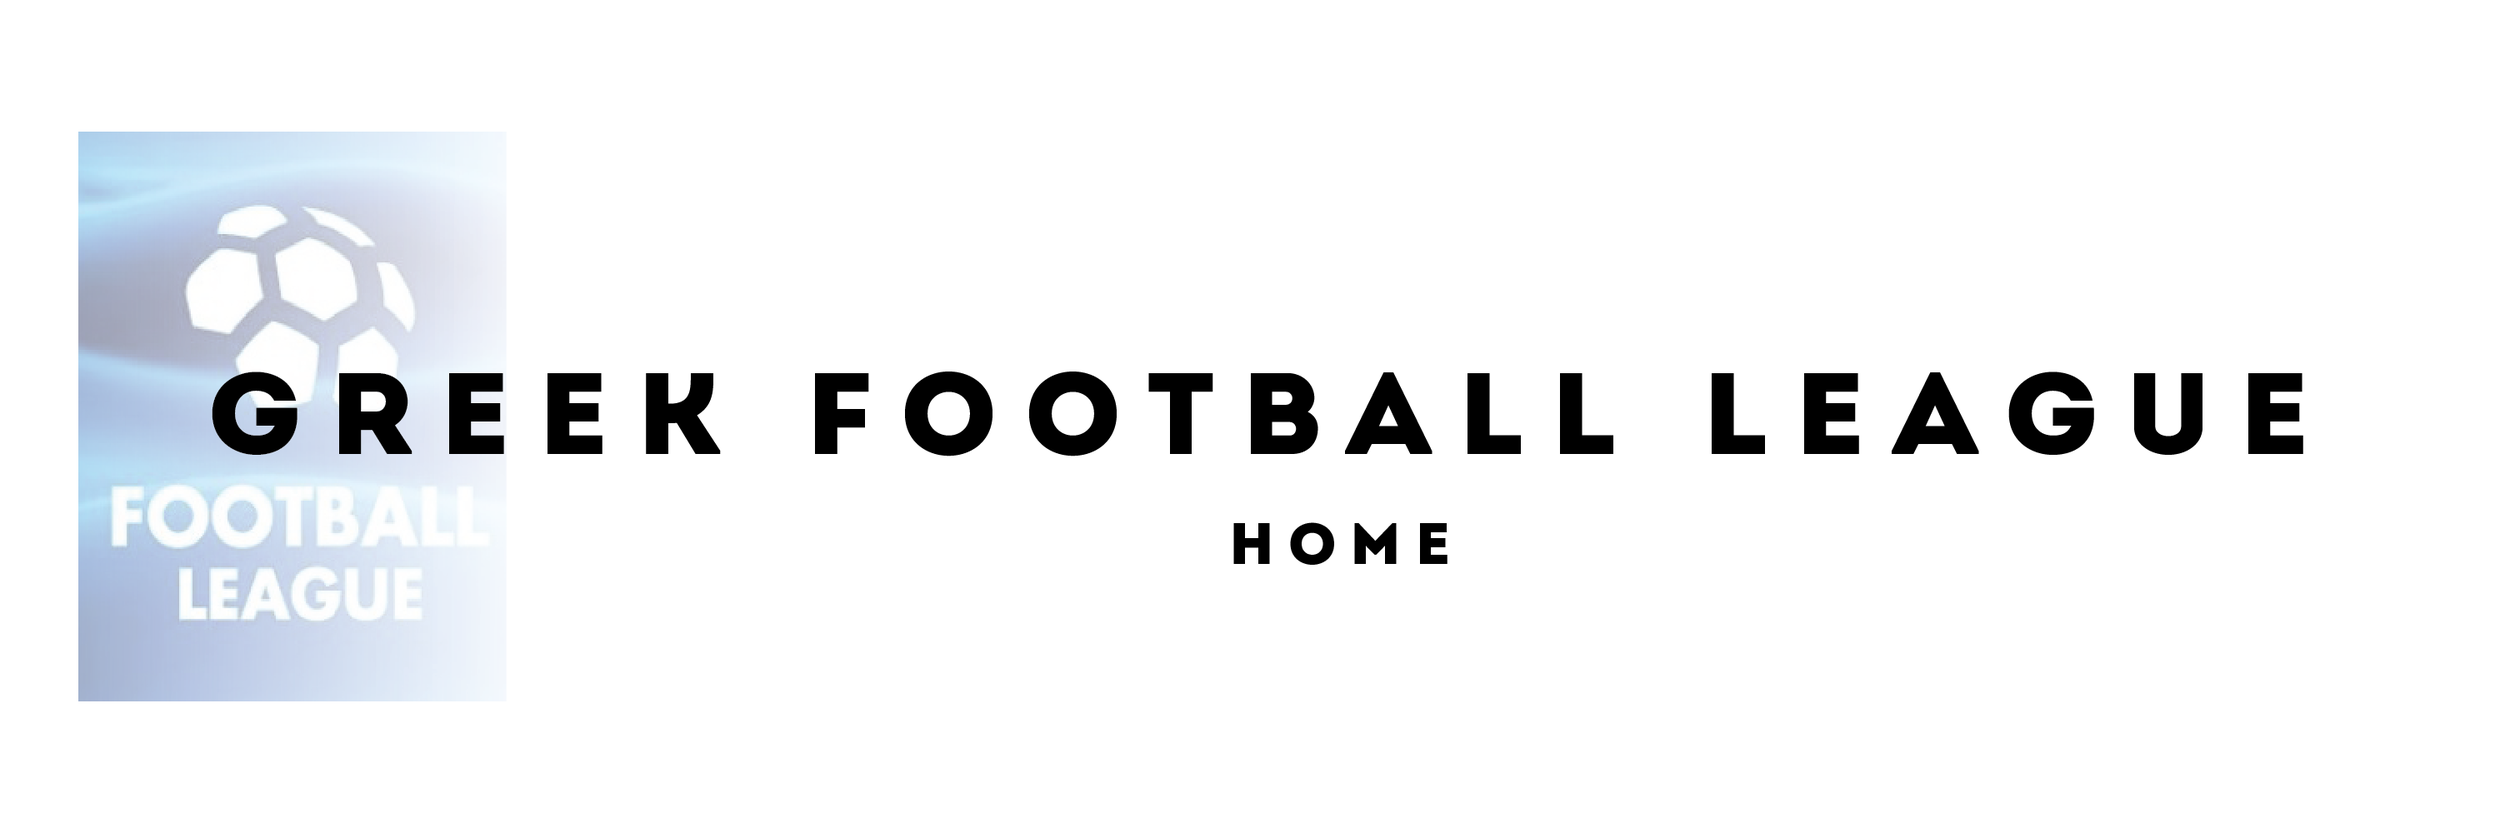 Greek Football League Home Agonasport Com